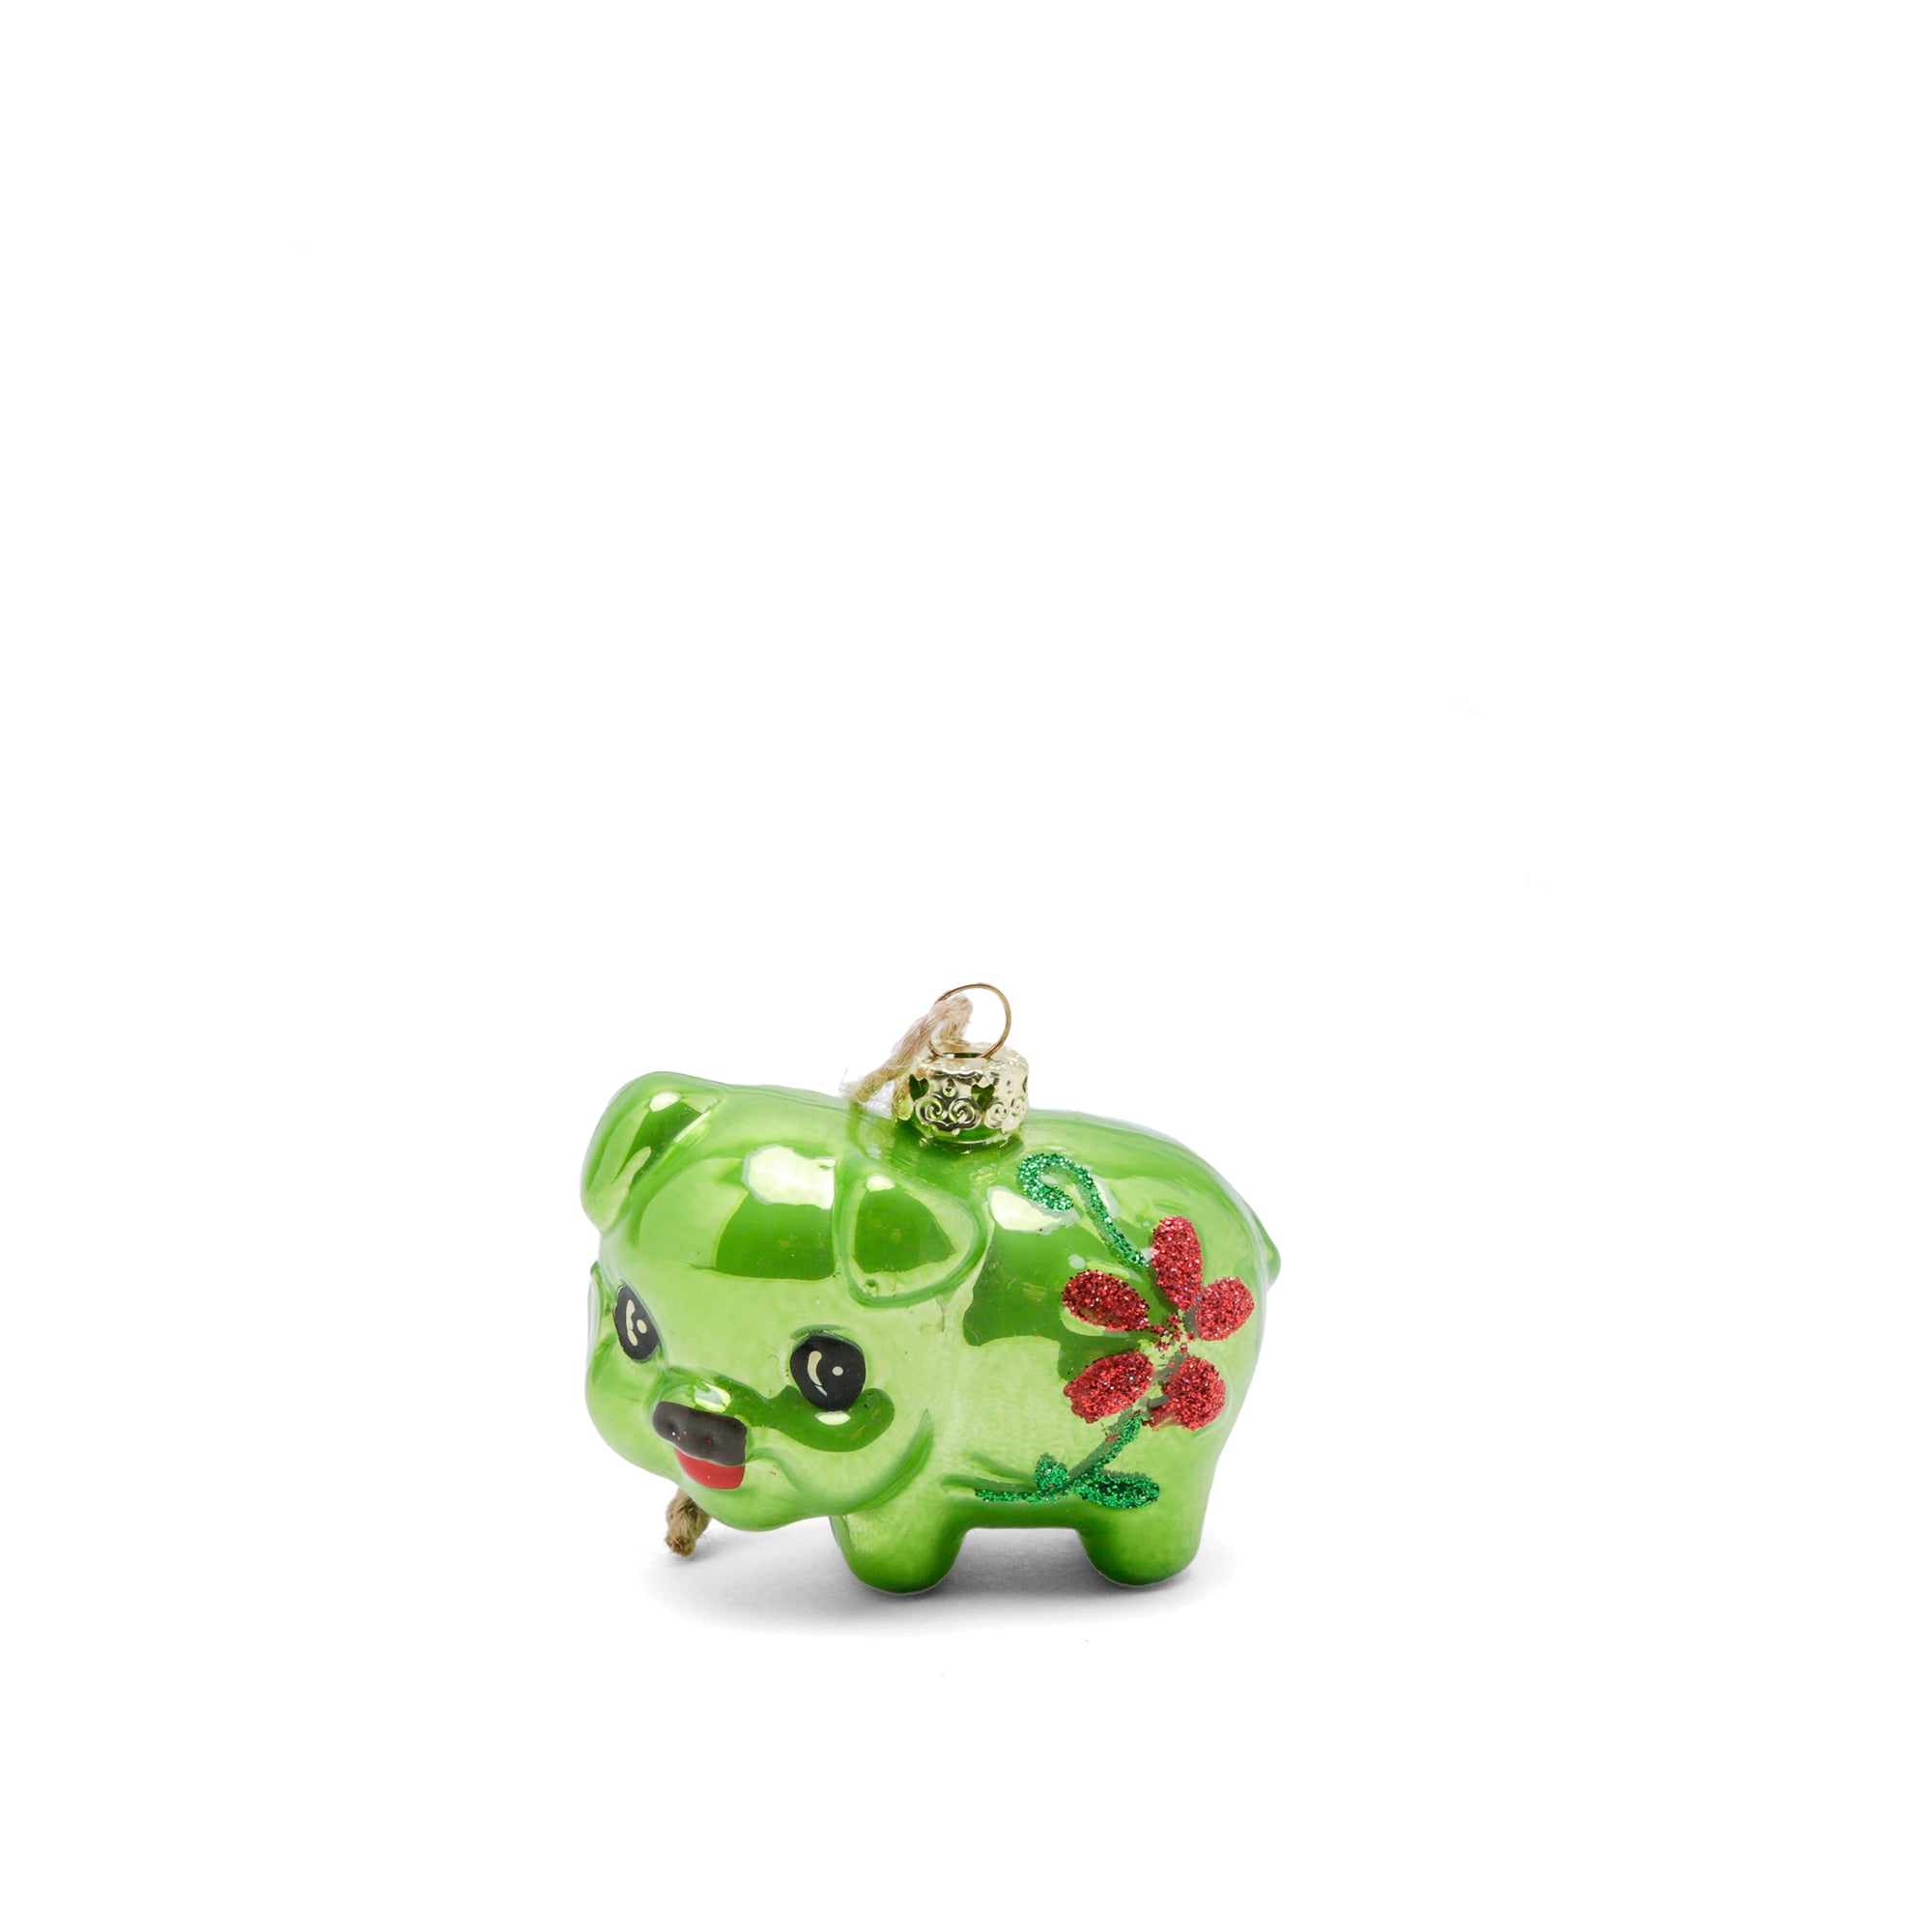 Tiny Retro Pig Ornament